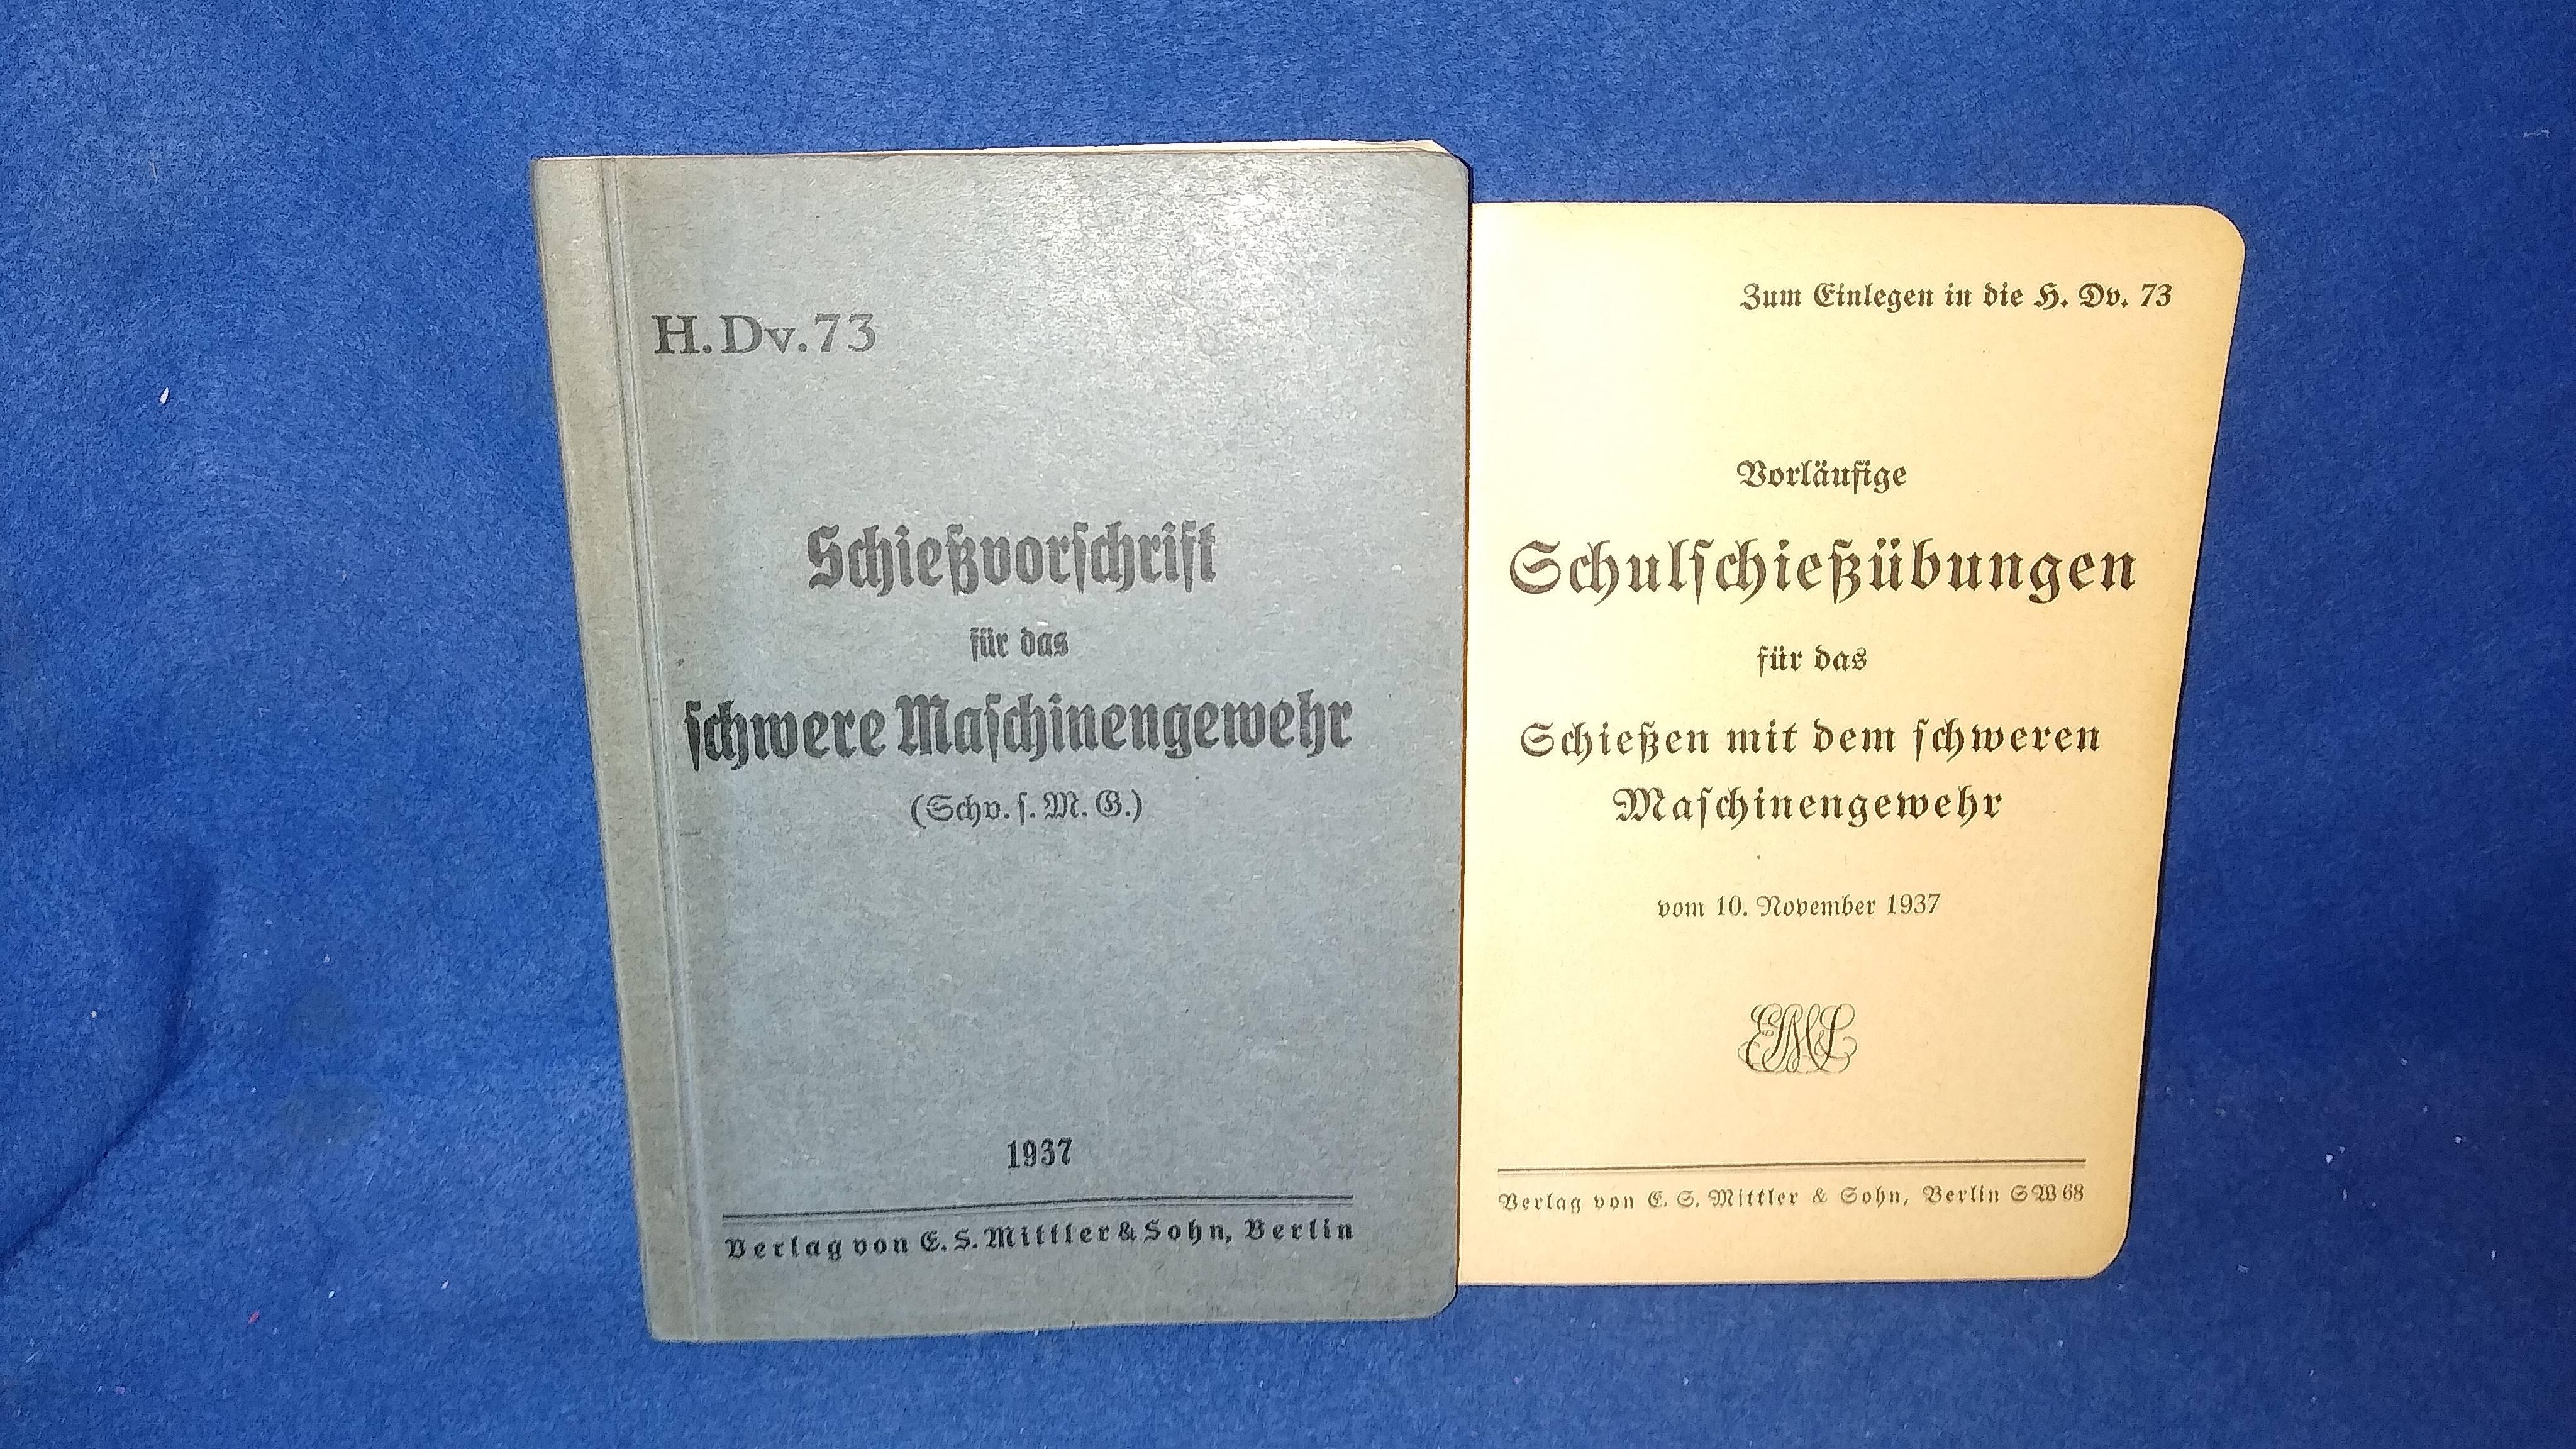 H.Dv.73 - Schießvorschrift für das schwere Maschinengewehr (Schv.s.M.G.). Mit dem Einlegeblatt" Vorläufige Schulschießübungen für das Schießen mit dem schweren Maschinengewehr".